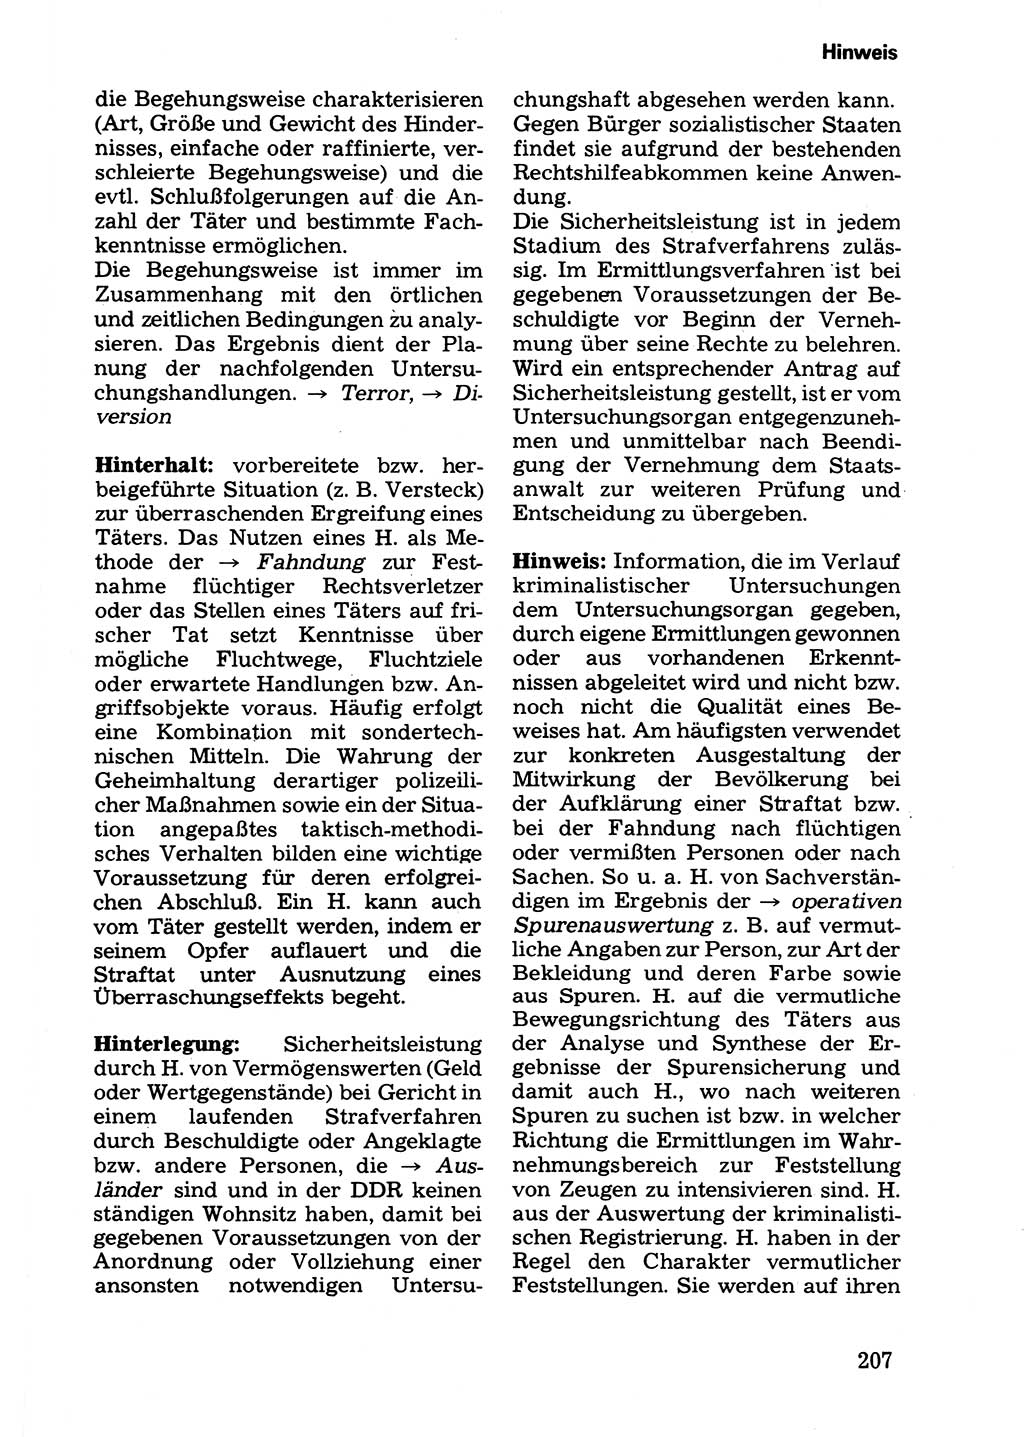 Wörterbuch der sozialistischen Kriminalistik [Deutsche Demokratische Republik (DDR)] 1981, Seite 207 (Wb. soz. Krim. DDR 1981, S. 207)